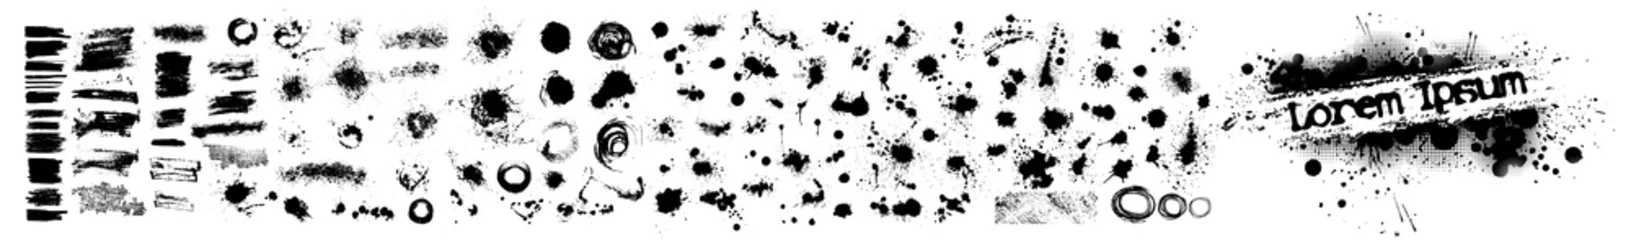 Fotobehang Een reeks zwarte vlekken van verf. vector illustratie © Мария Неноглядова